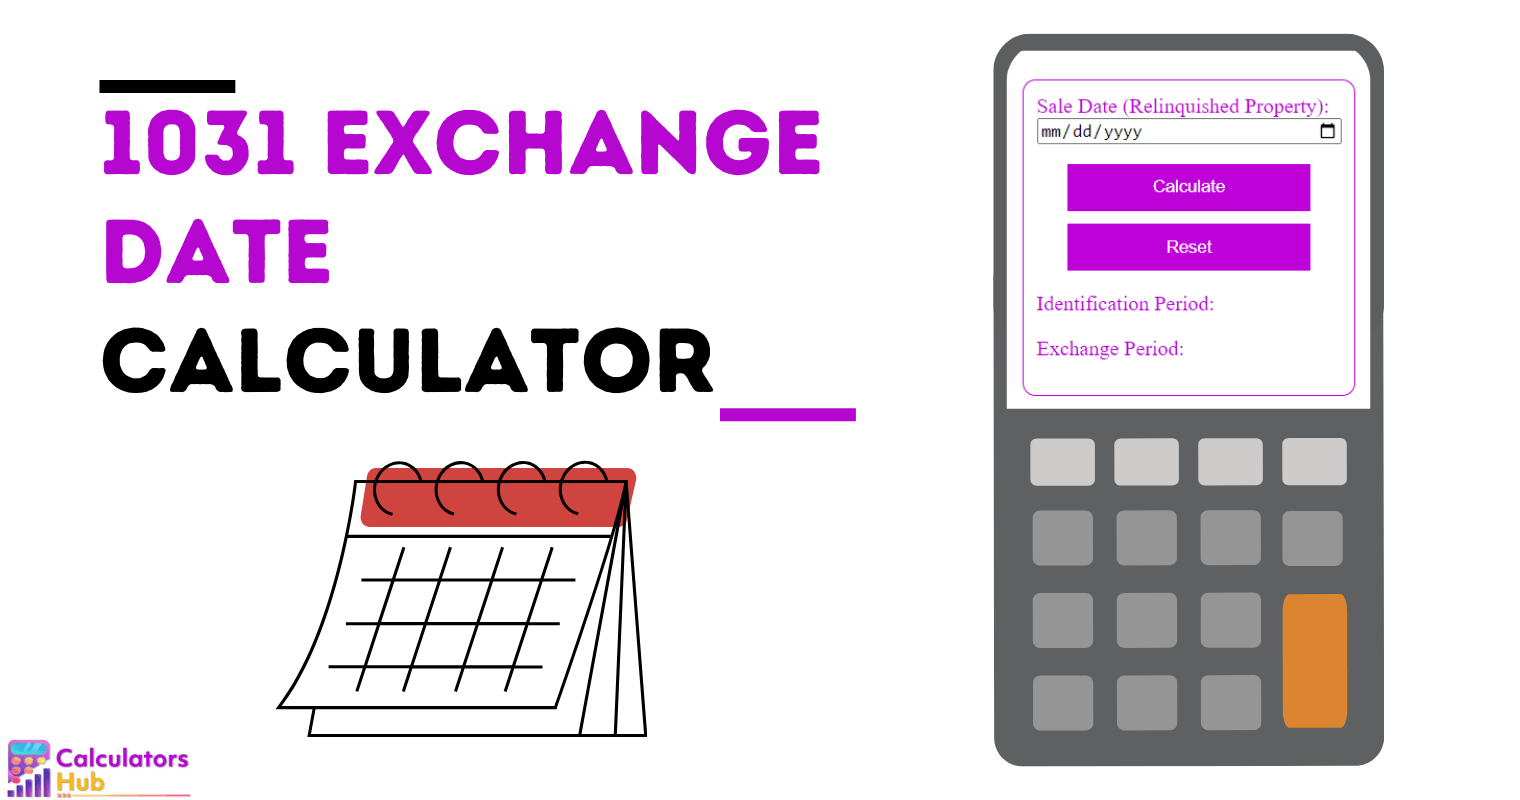 1031 Exchange Date Calculator